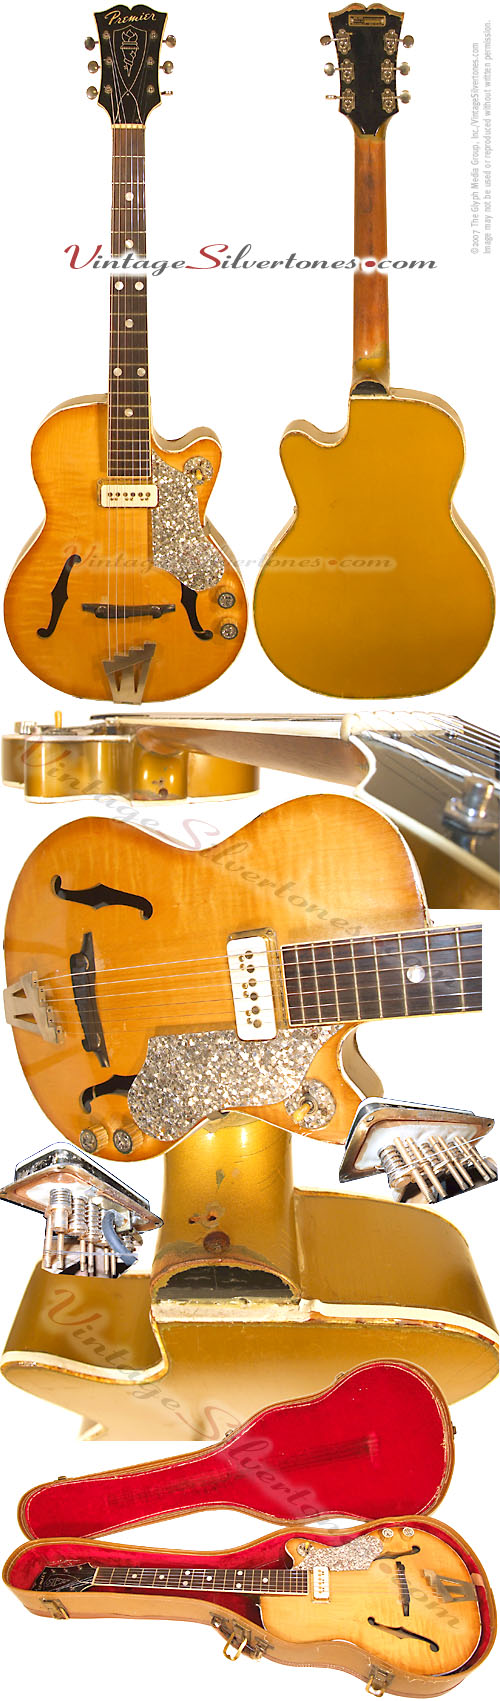 Multivox Premier Bantom E-711 electric guitar circa 1962